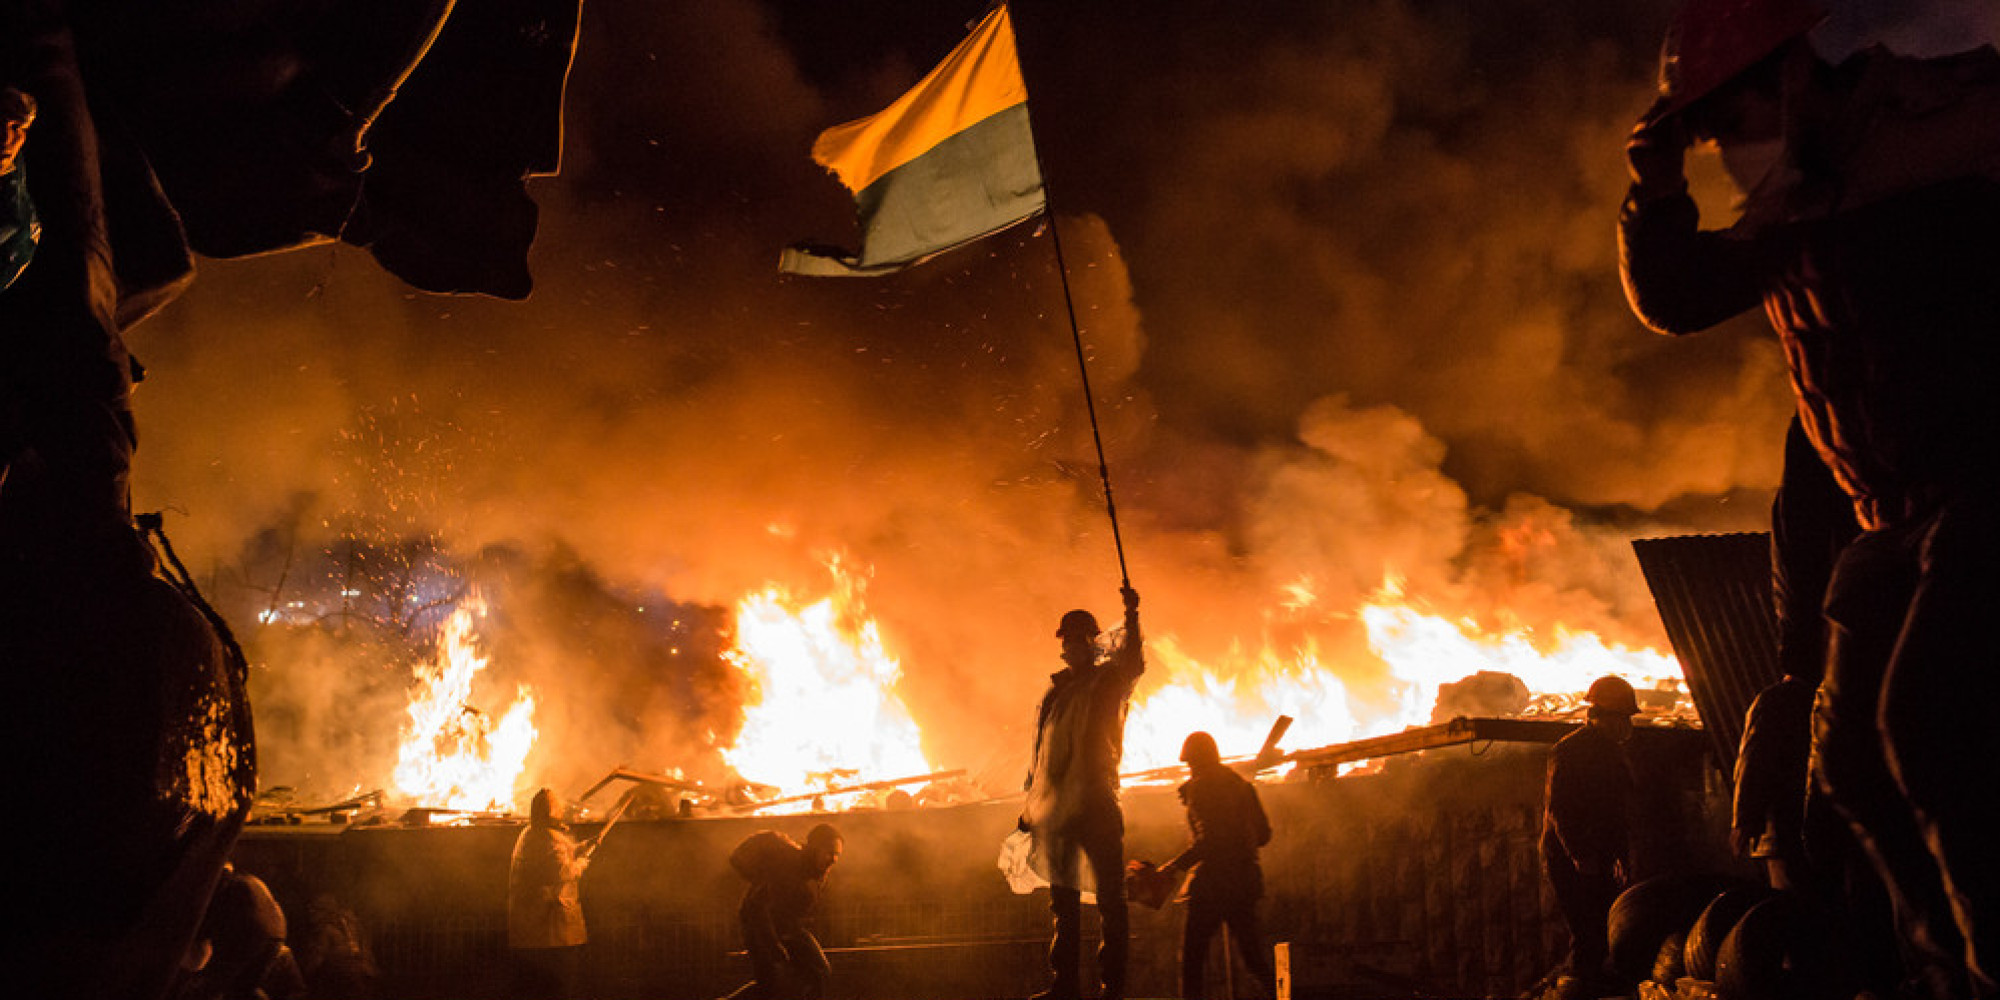 L'UE POUR EUX. Le rêve brisé des Ukrainiens